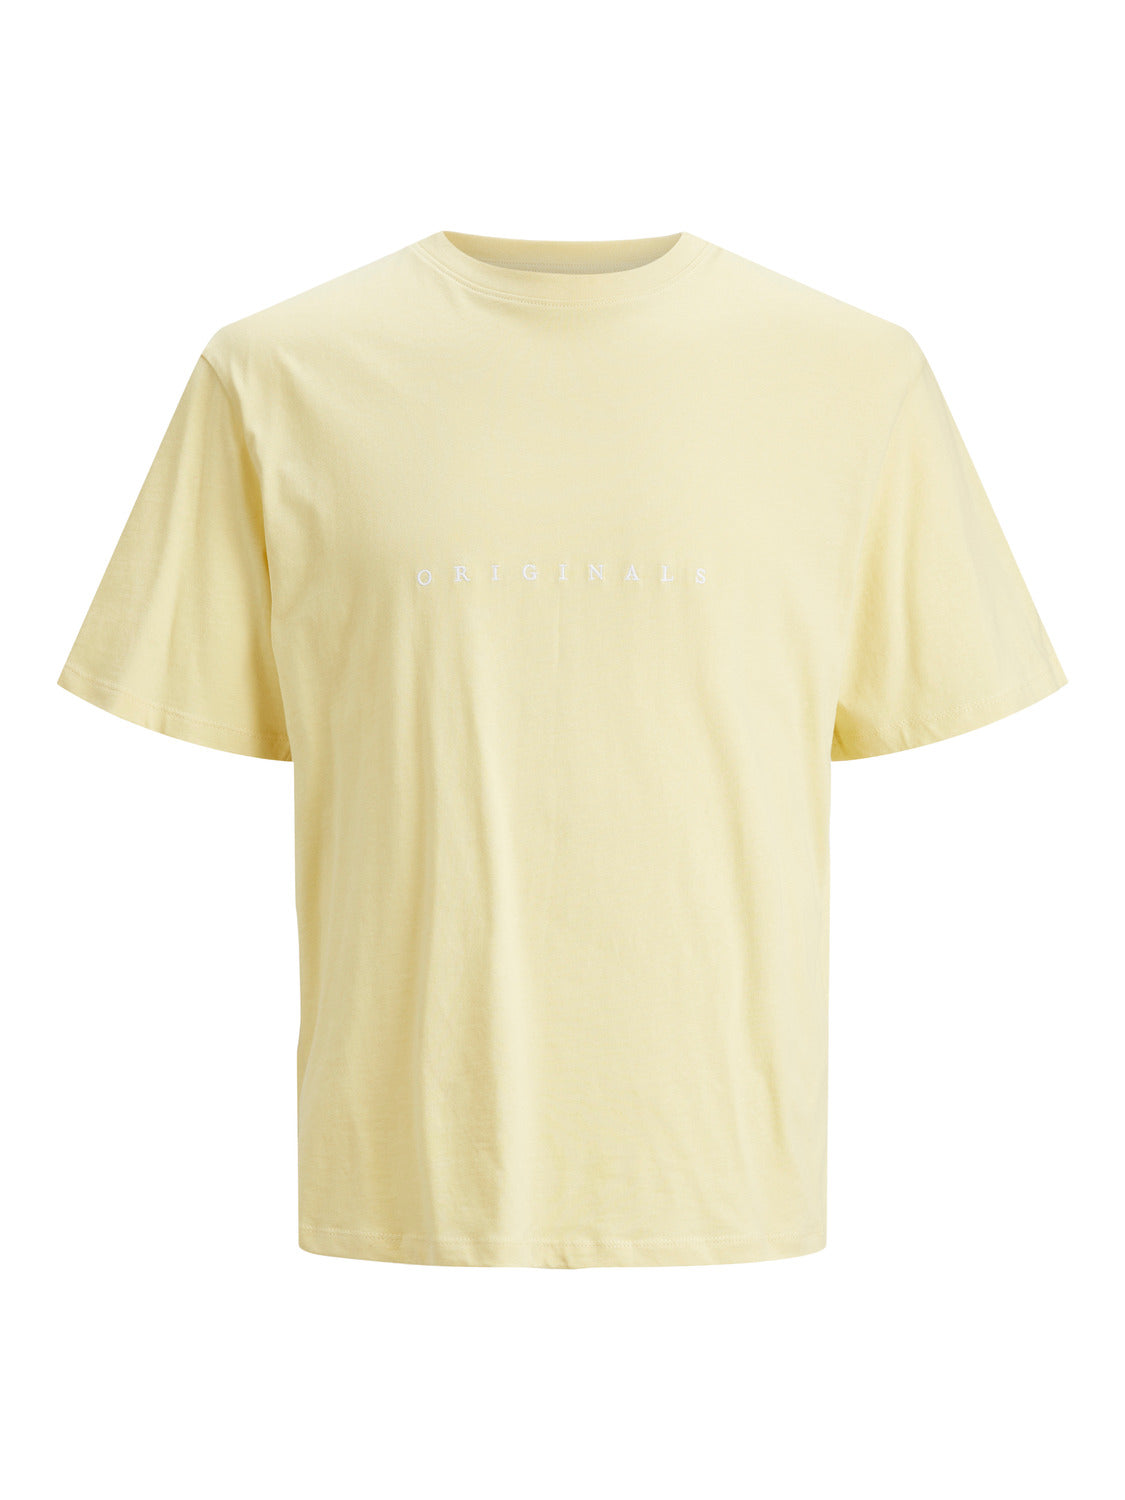 Camiseta de manga corta JORCOPENHAGEN - Amarillo